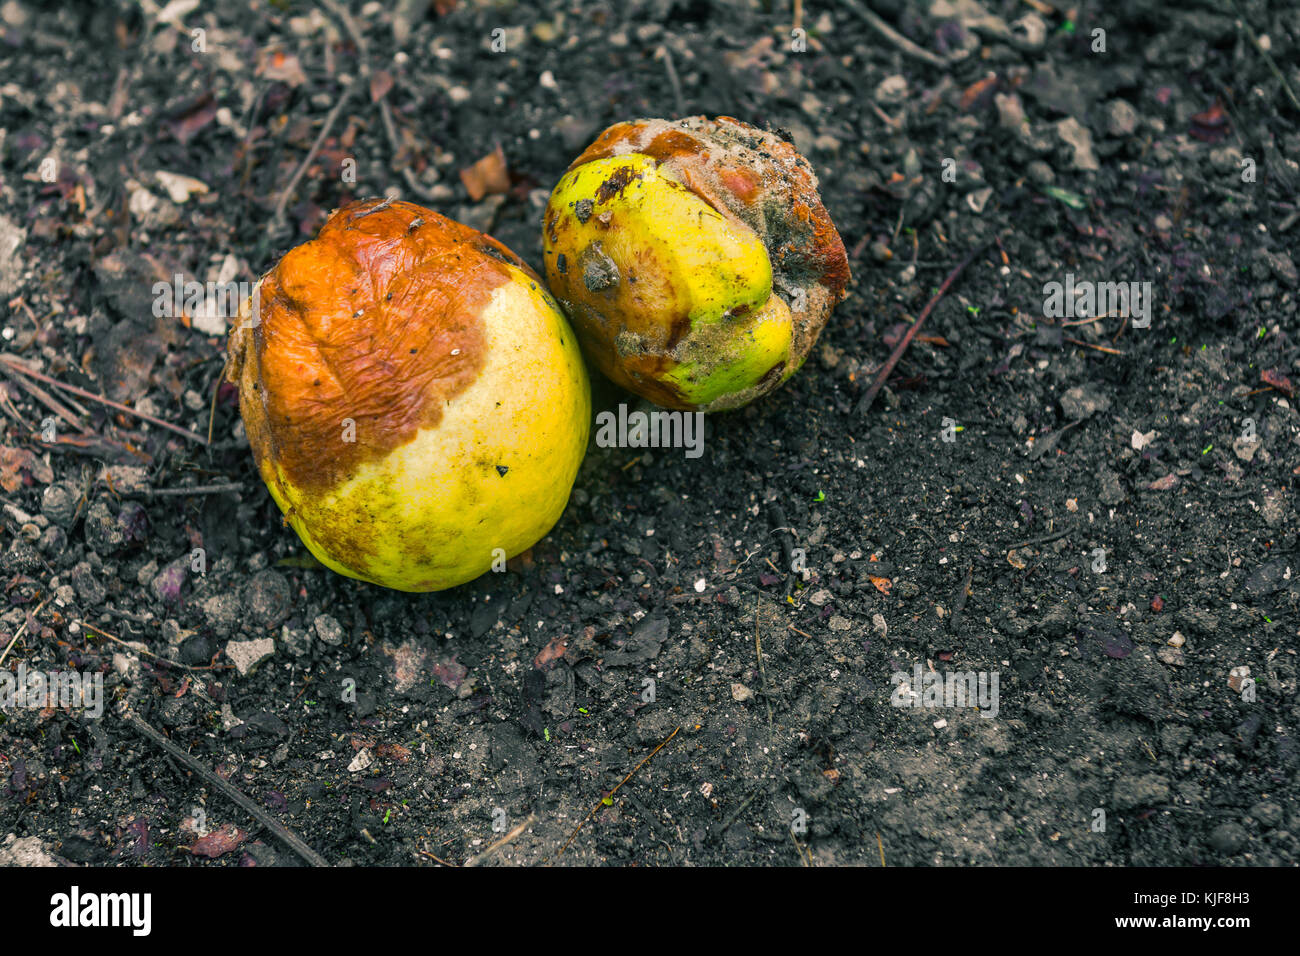 Rotten fallen fruit on the ground Stock Photo